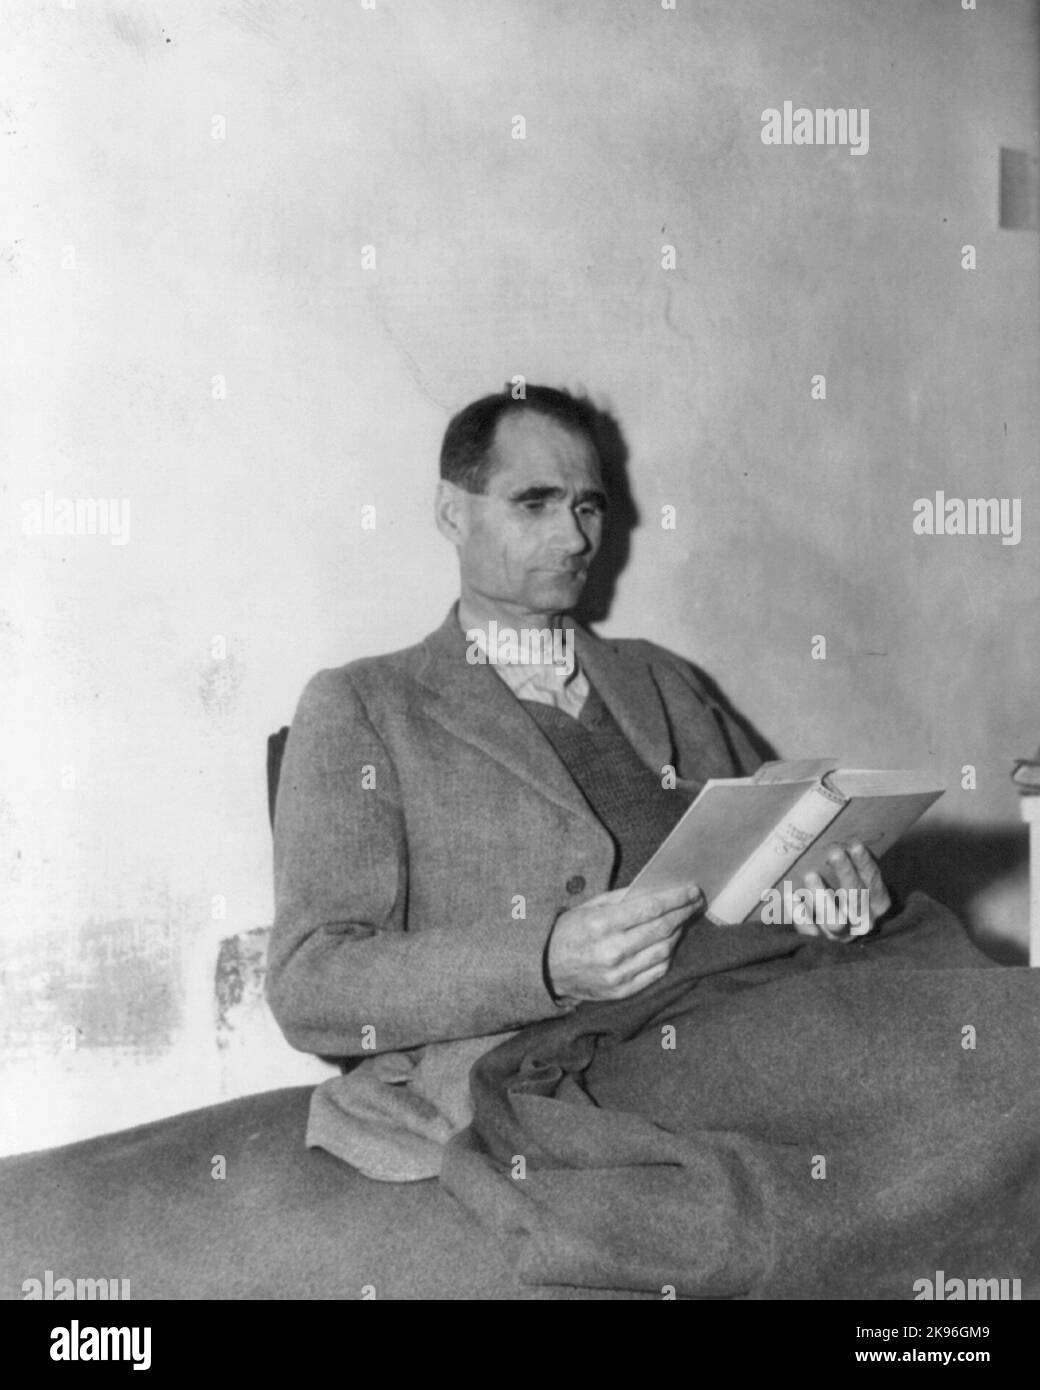 Rudolph Hess, Rudolf Hess im Gefängnis Landsberg. Rudolf Walter Richard Hess (1894 – 1987) deutscher Politiker und ein führendes Mitglied der Nazi-Partei in Nazi-Deutschland. Stockfoto